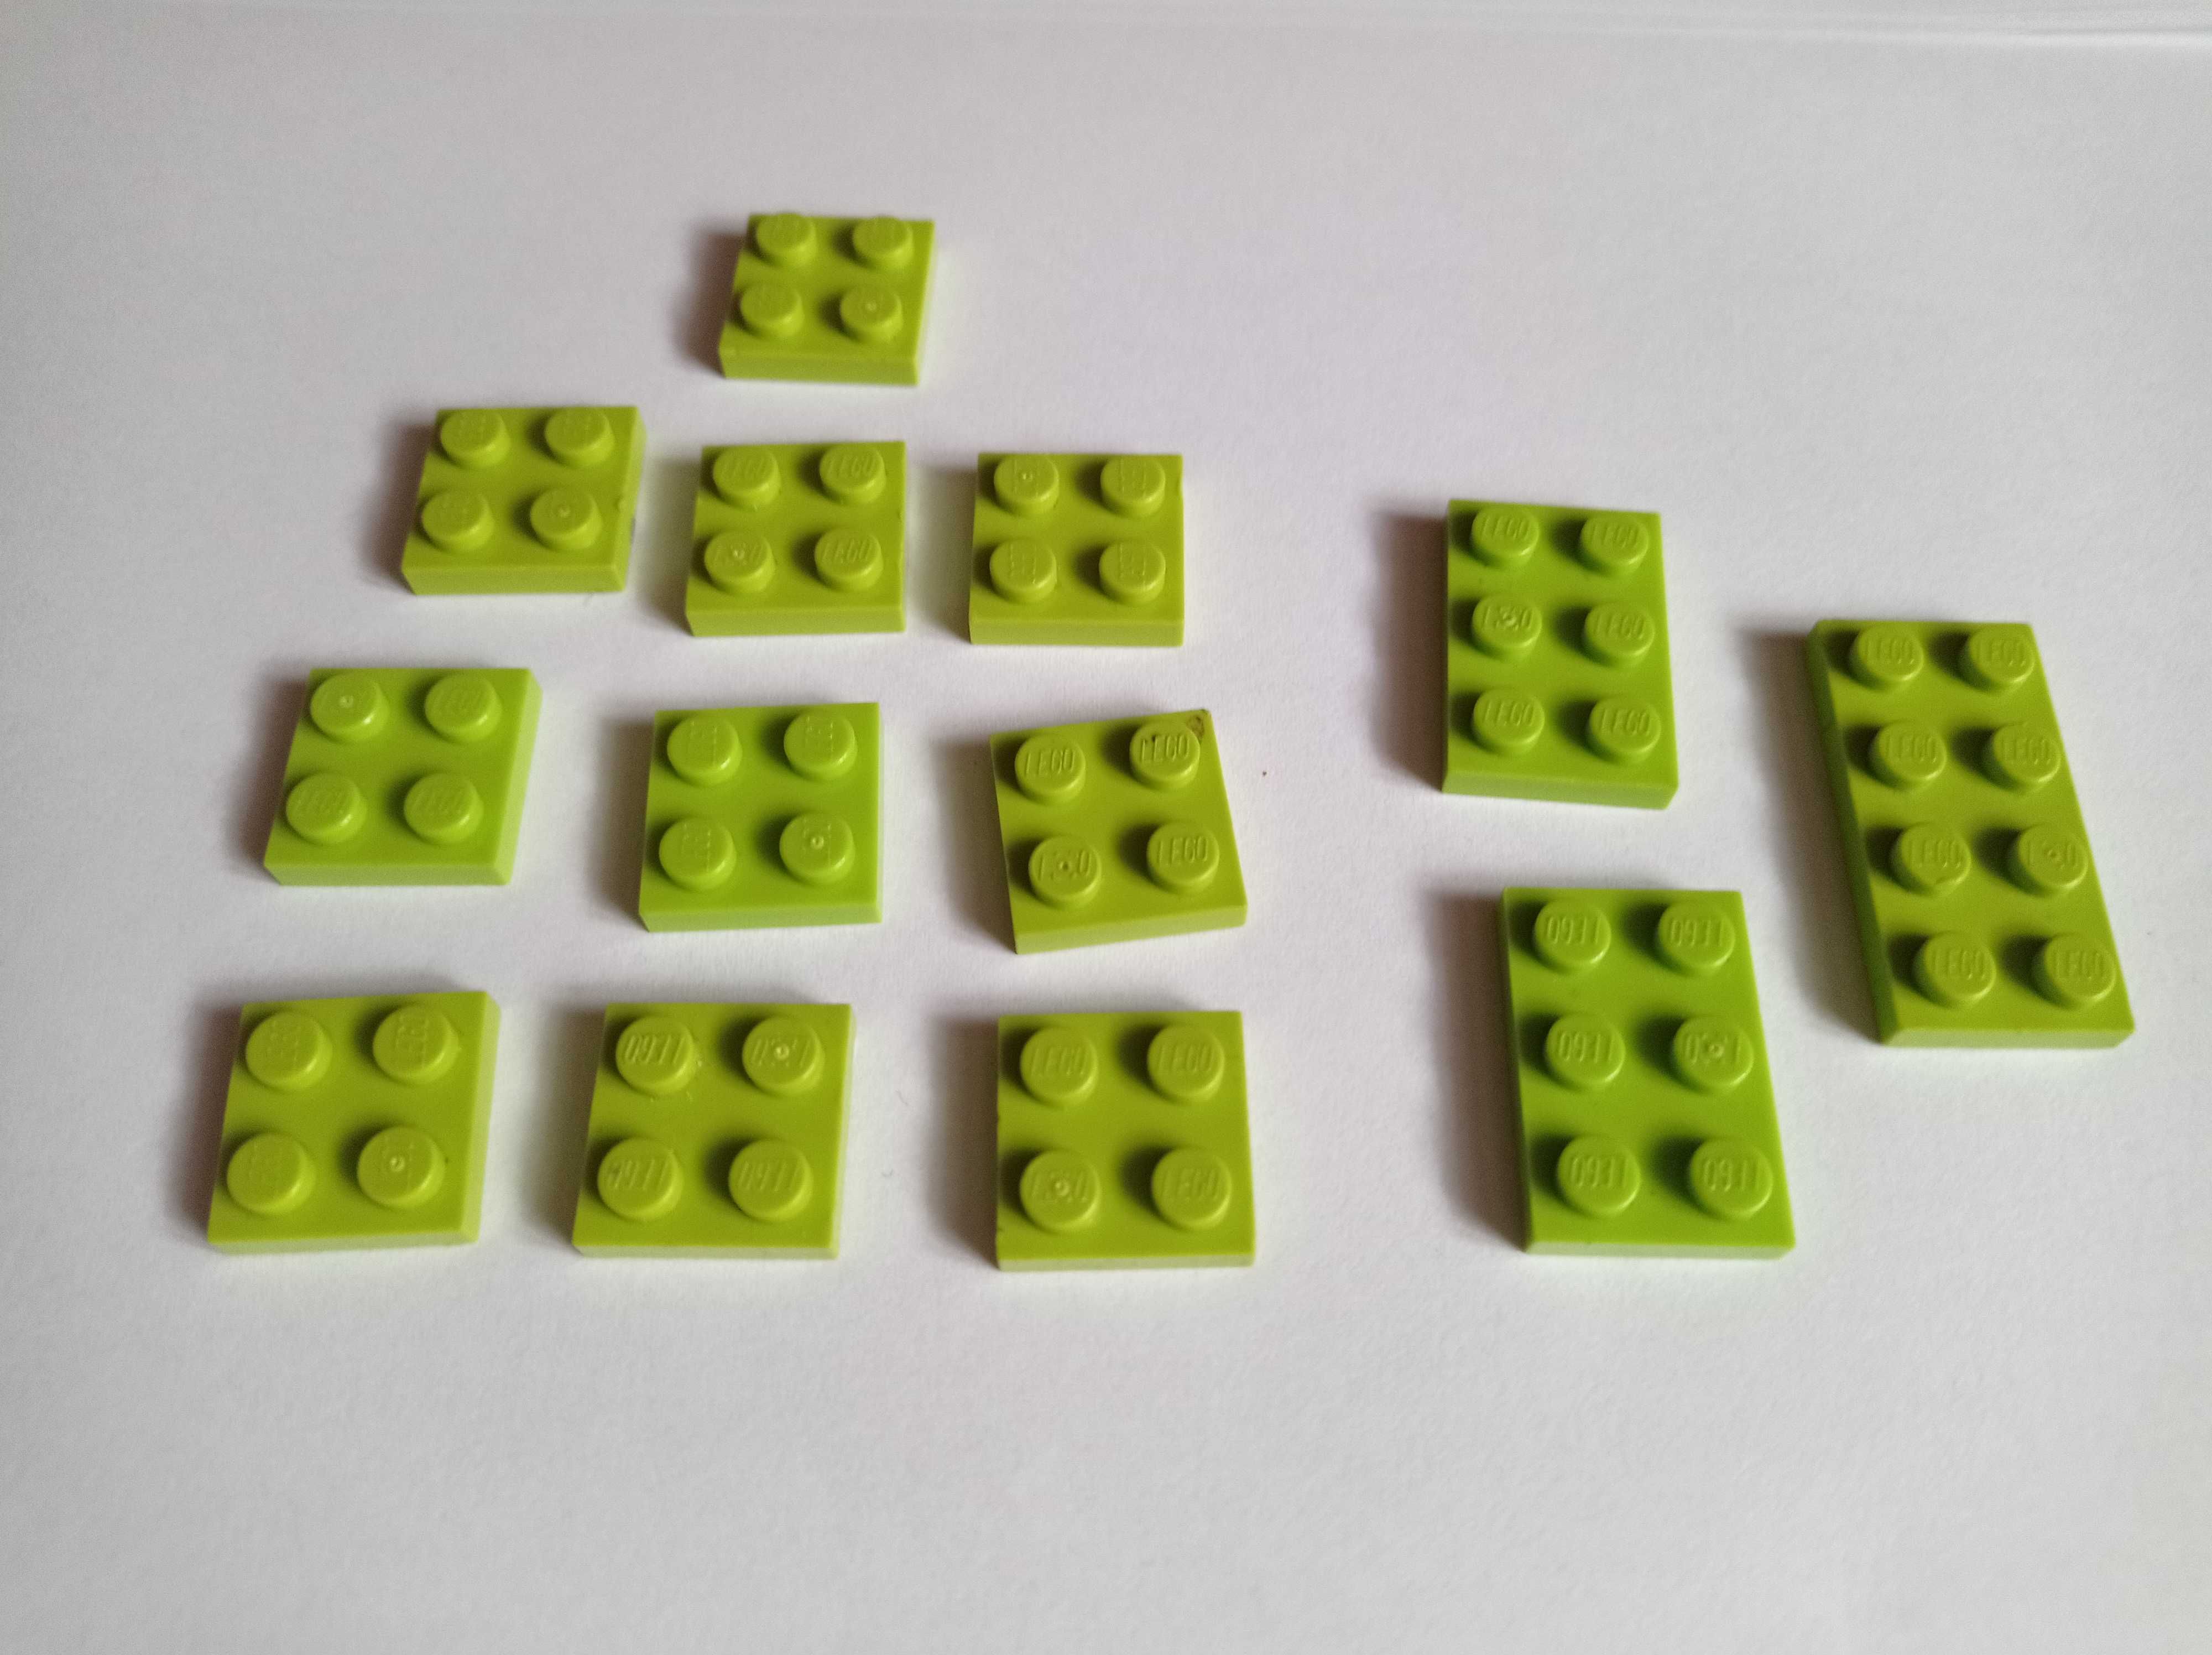 Klocki Lego, płytka, 2x2 (3022), 2x3 (3021), 2x4 (3020), zielony